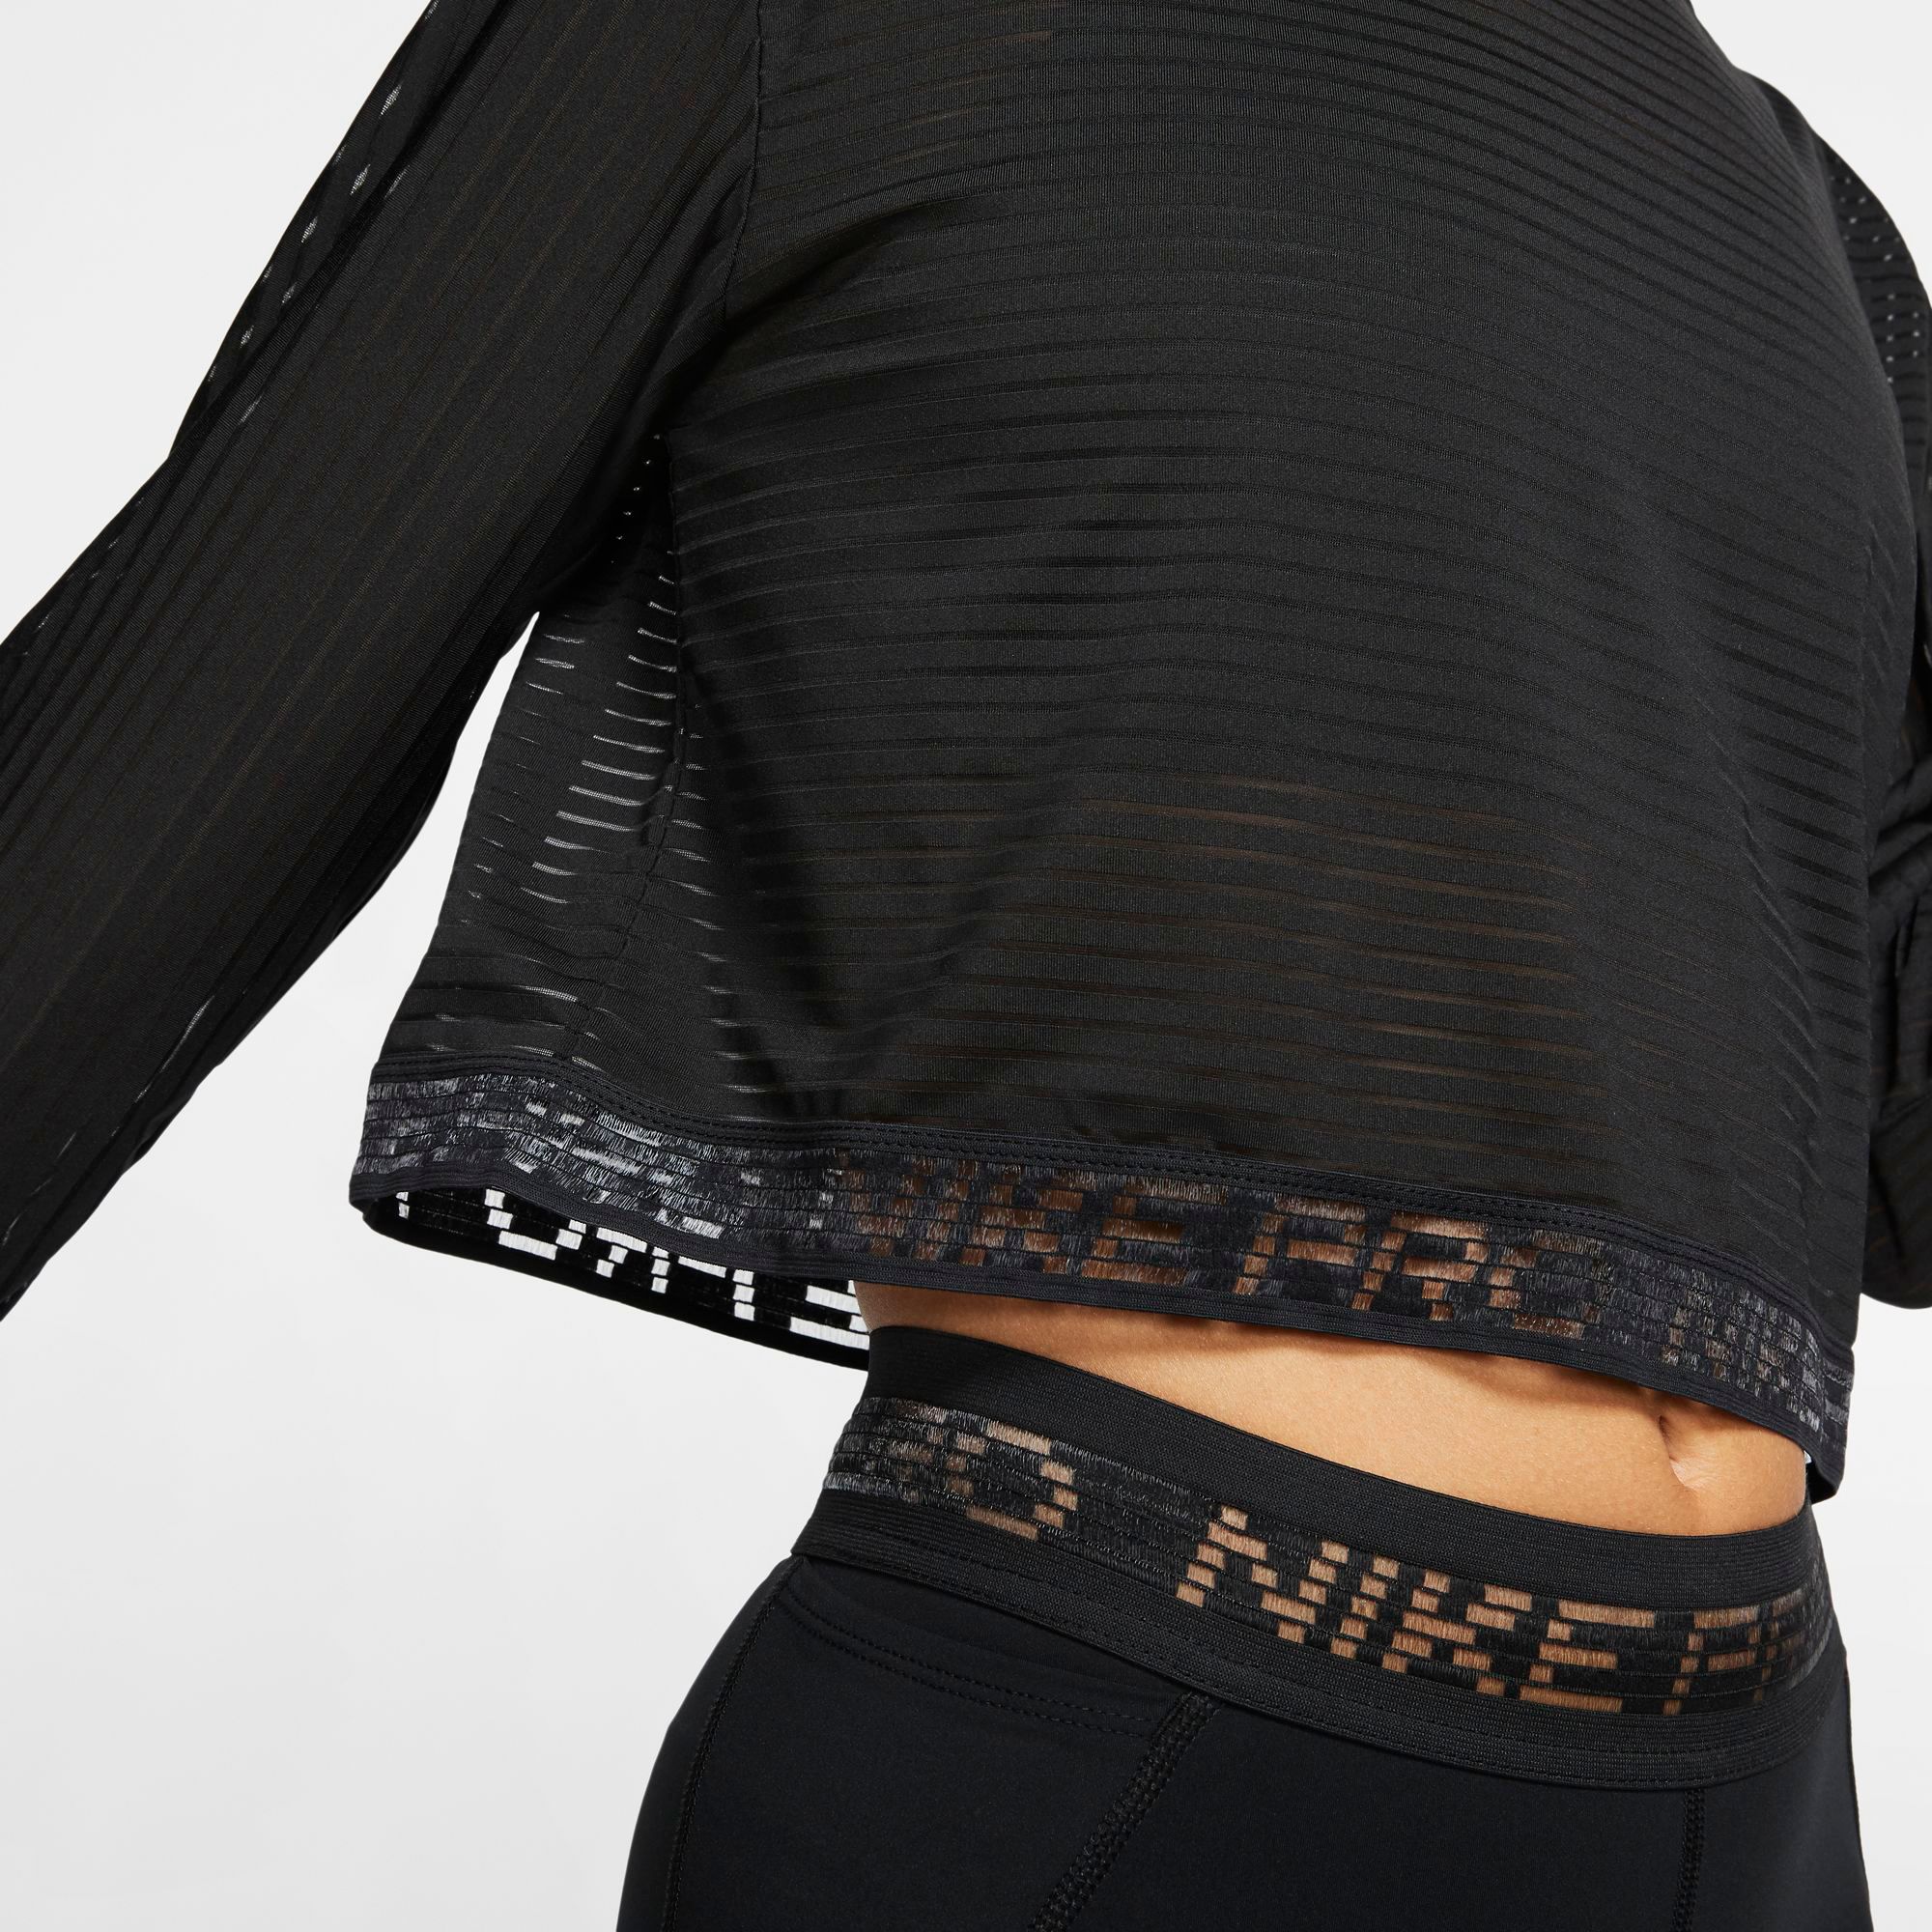 nike women's pro mesh long sleeve shirt